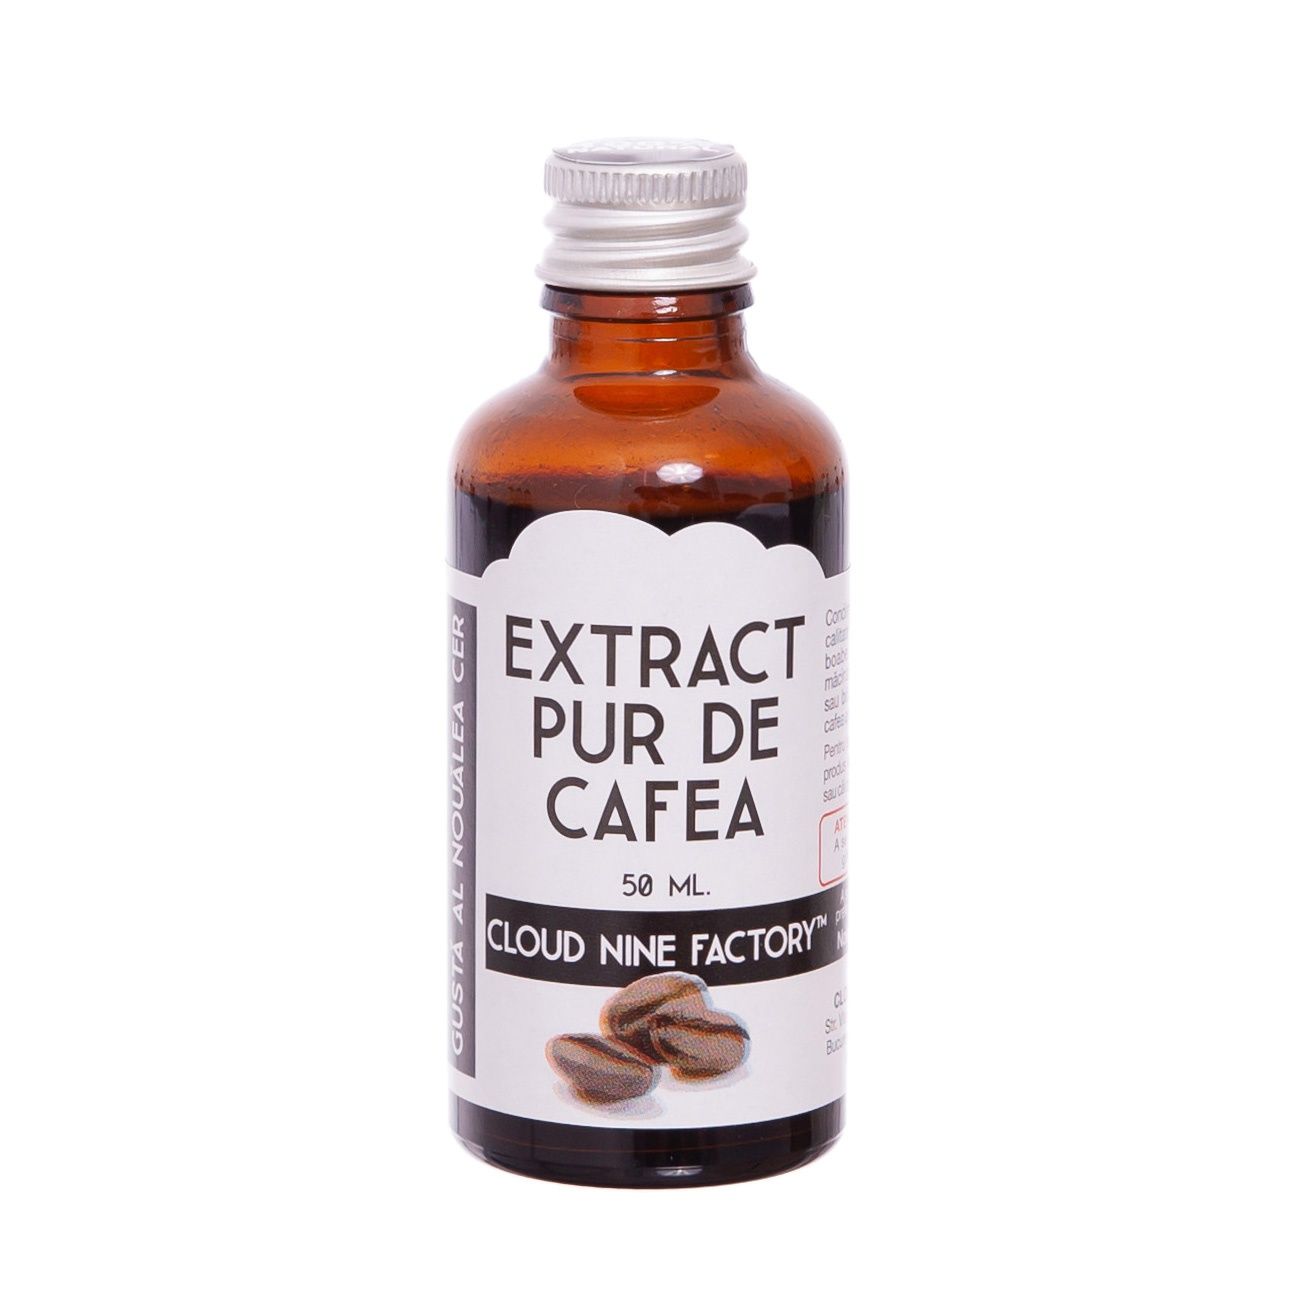 Extract Pur de Cafea (50 ml.) extract pur de cafea (50 ml.) x 10 buc. - IMG 2612 - Extract Pur de Cafea (50 ml.) x 10 buc. extract pur de cafea - IMG 2612 - Extract Pur de Cafea